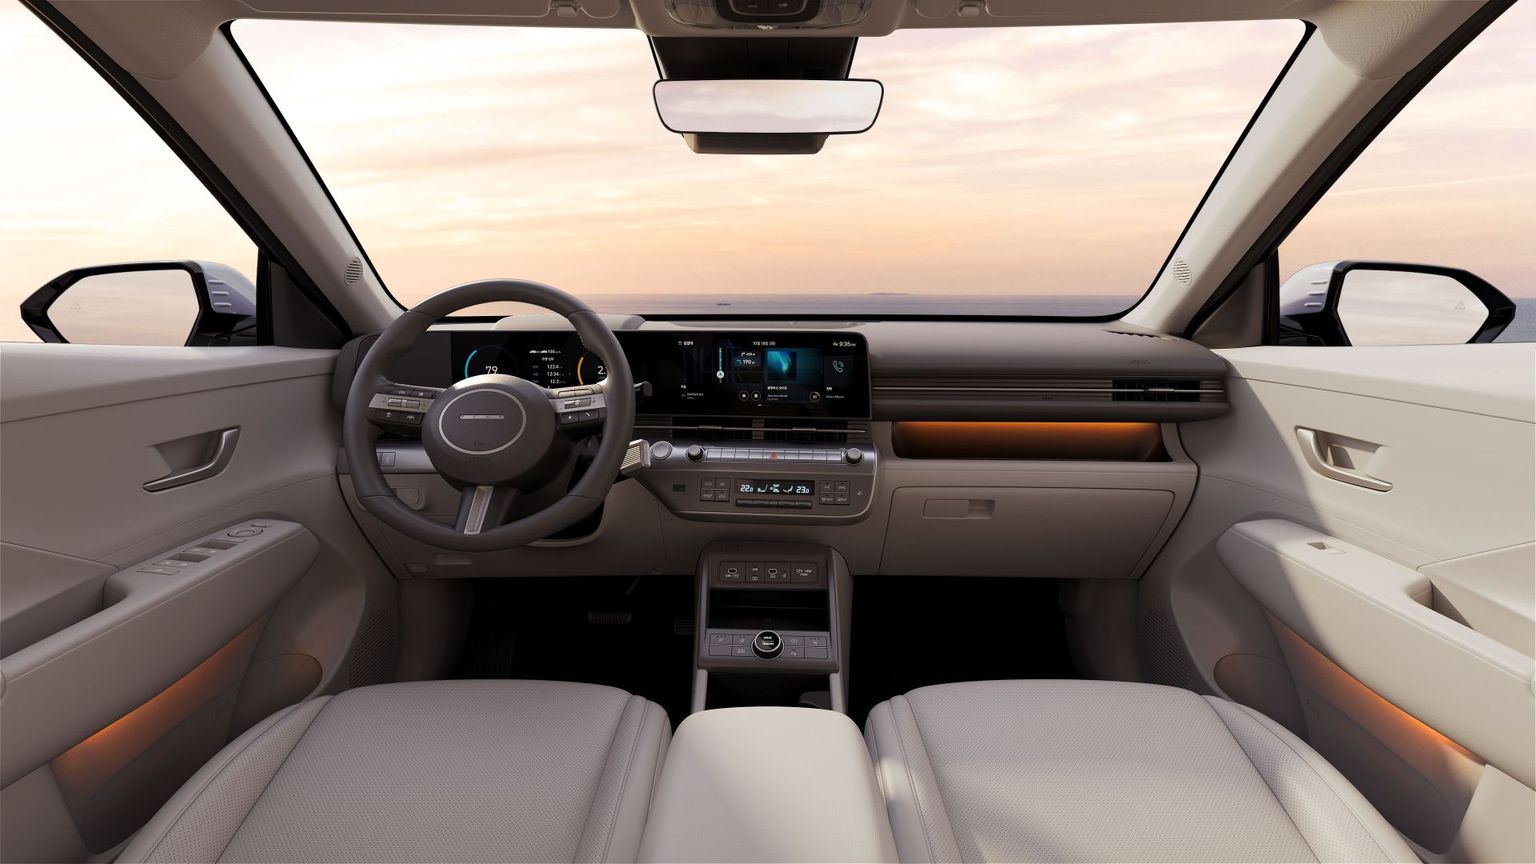 Uus Hyundai Kona 2023. aasta mudel on küll laia puuteekraaniga, kuid selle alt leiab endiselt ridamisi nuppe tähtsamate toimingute jaoks. Need ei kao Hyundai disaineri sõnul enne isejuhtivate autode tulekut veel kuhugi.